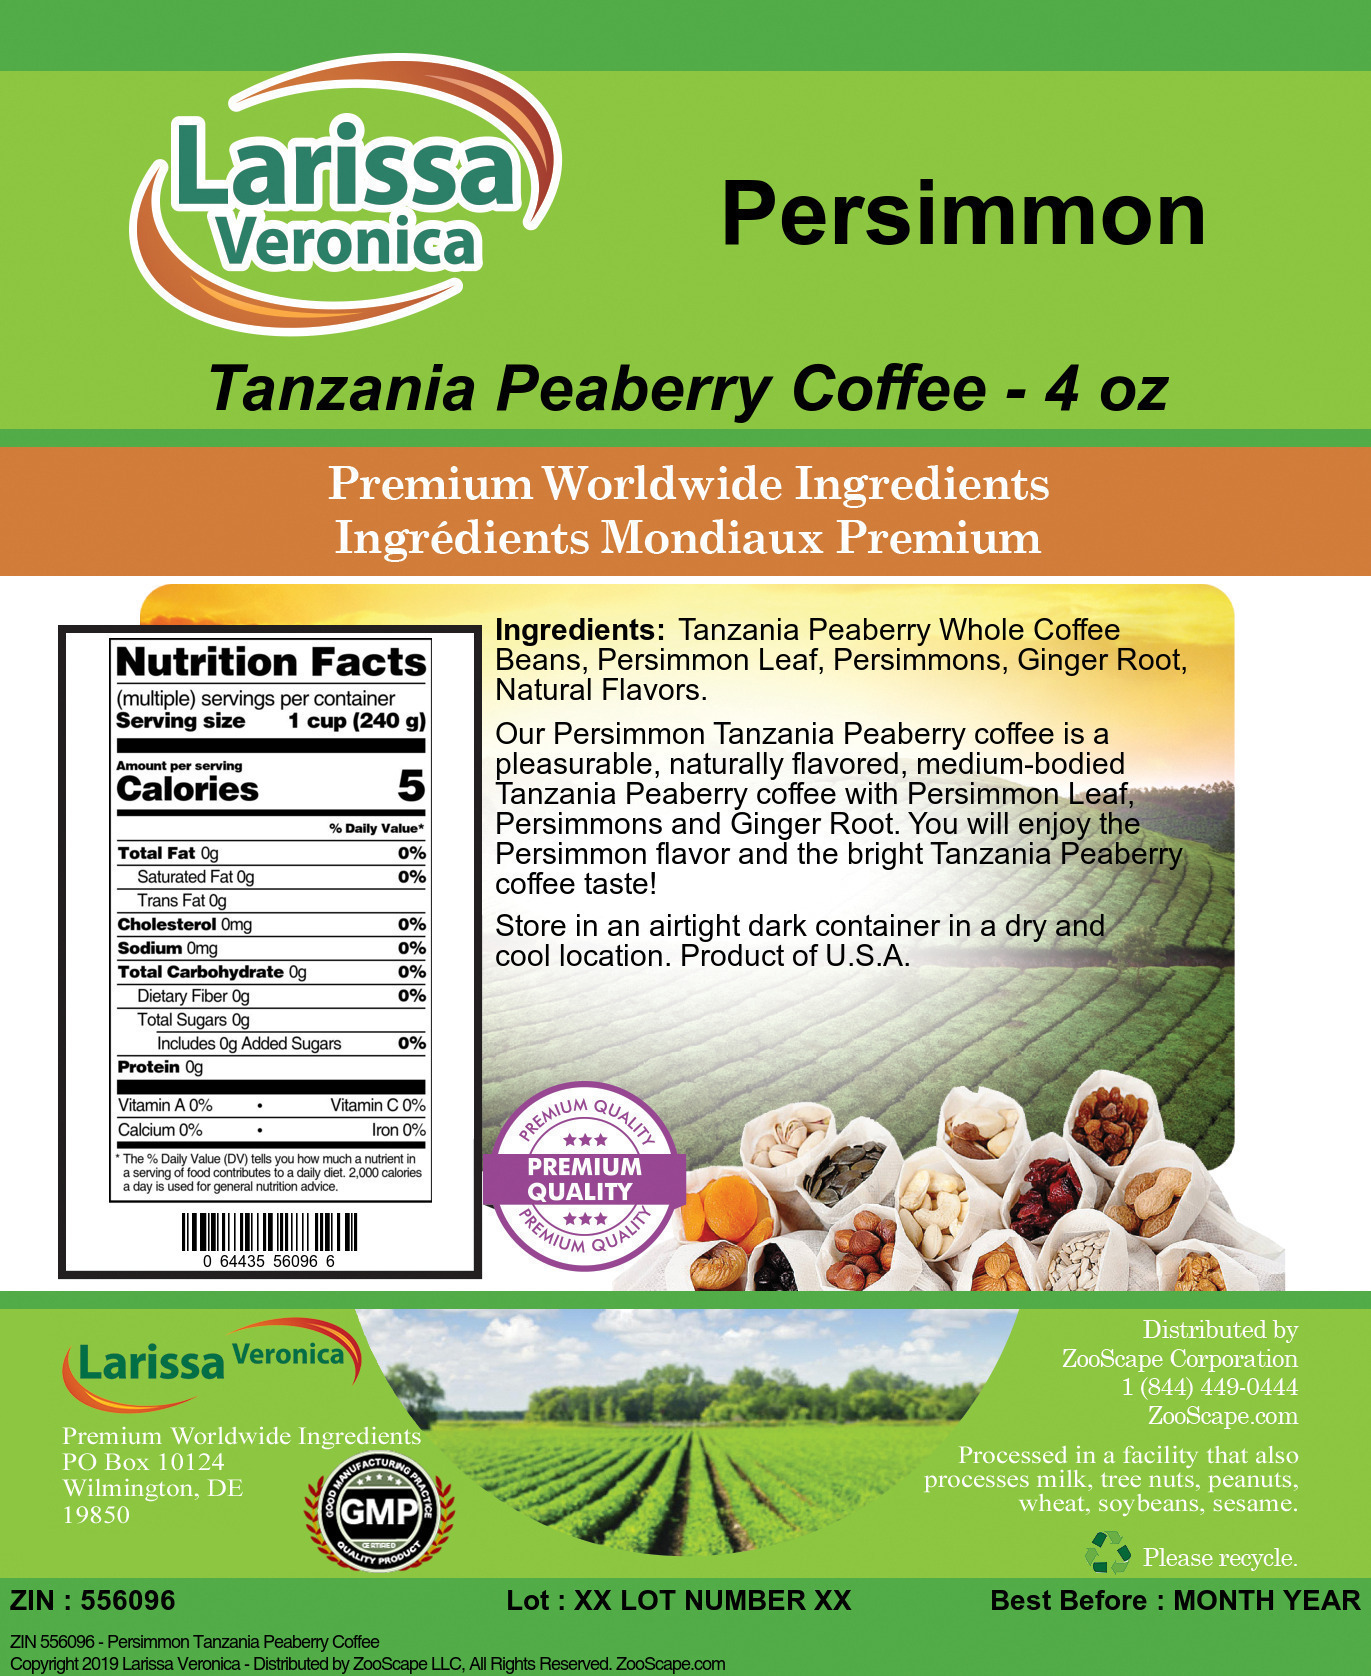 Persimmon Tanzania Peaberry Coffee - Label